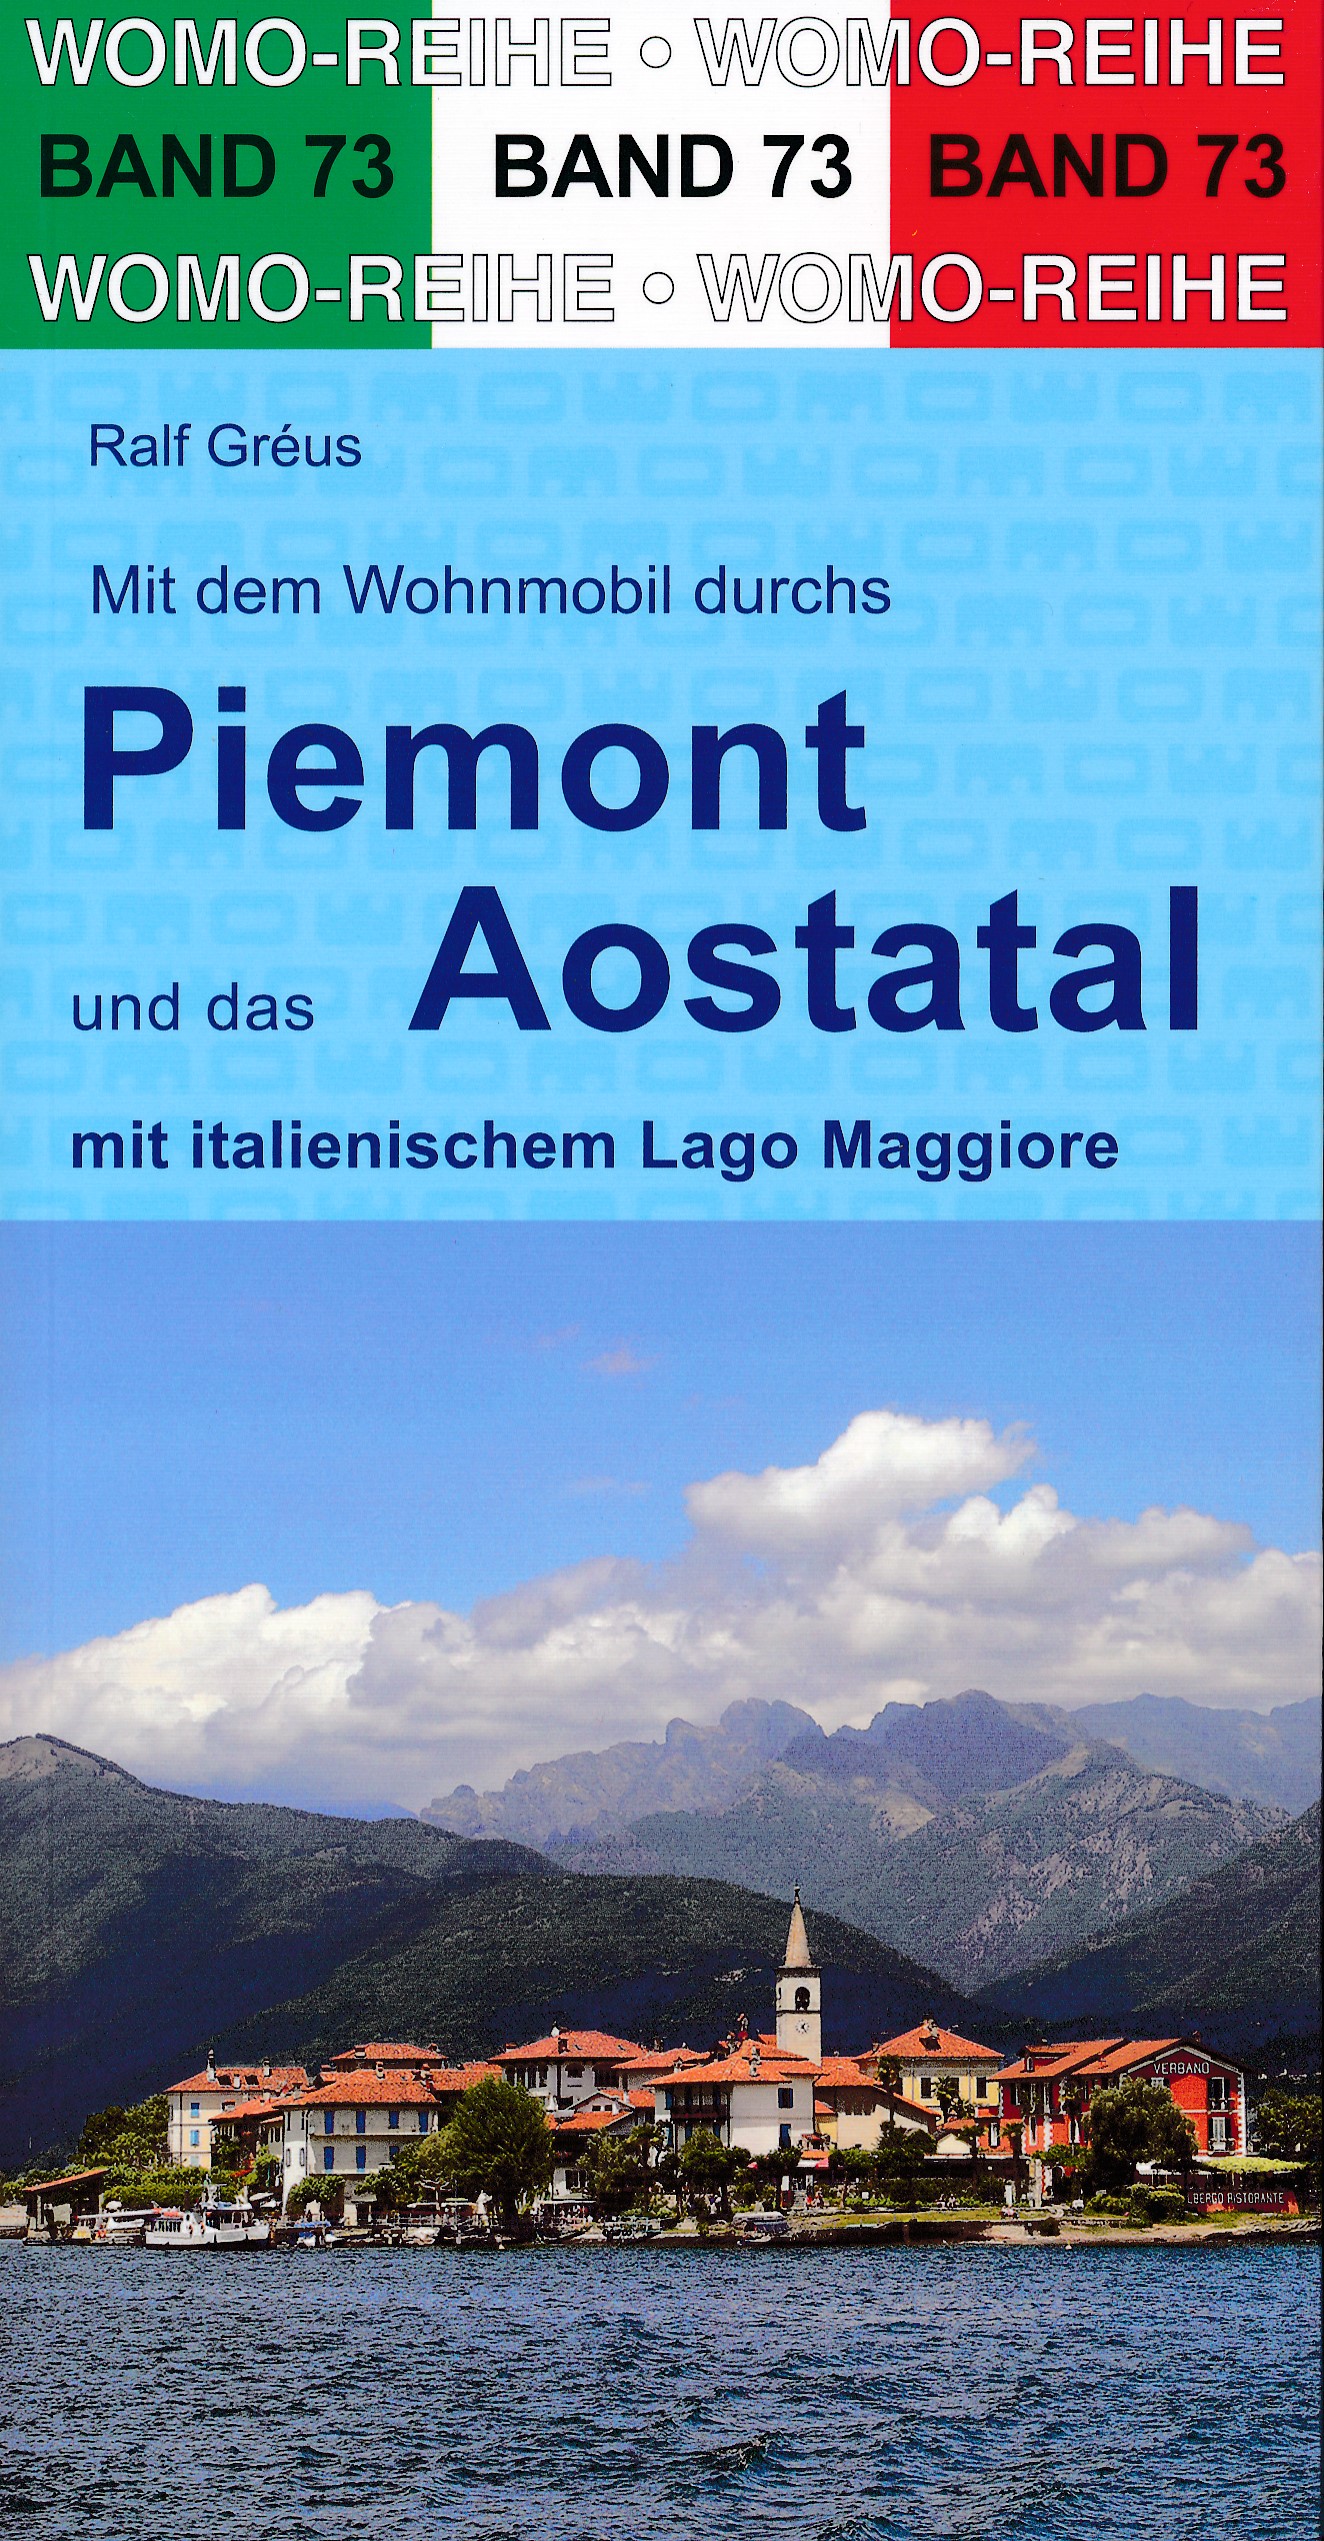 Online bestellen: Campergids 73 Mit dem Wohnmobil durchs Piemont und das Aosta-Tal | WOMO verlag